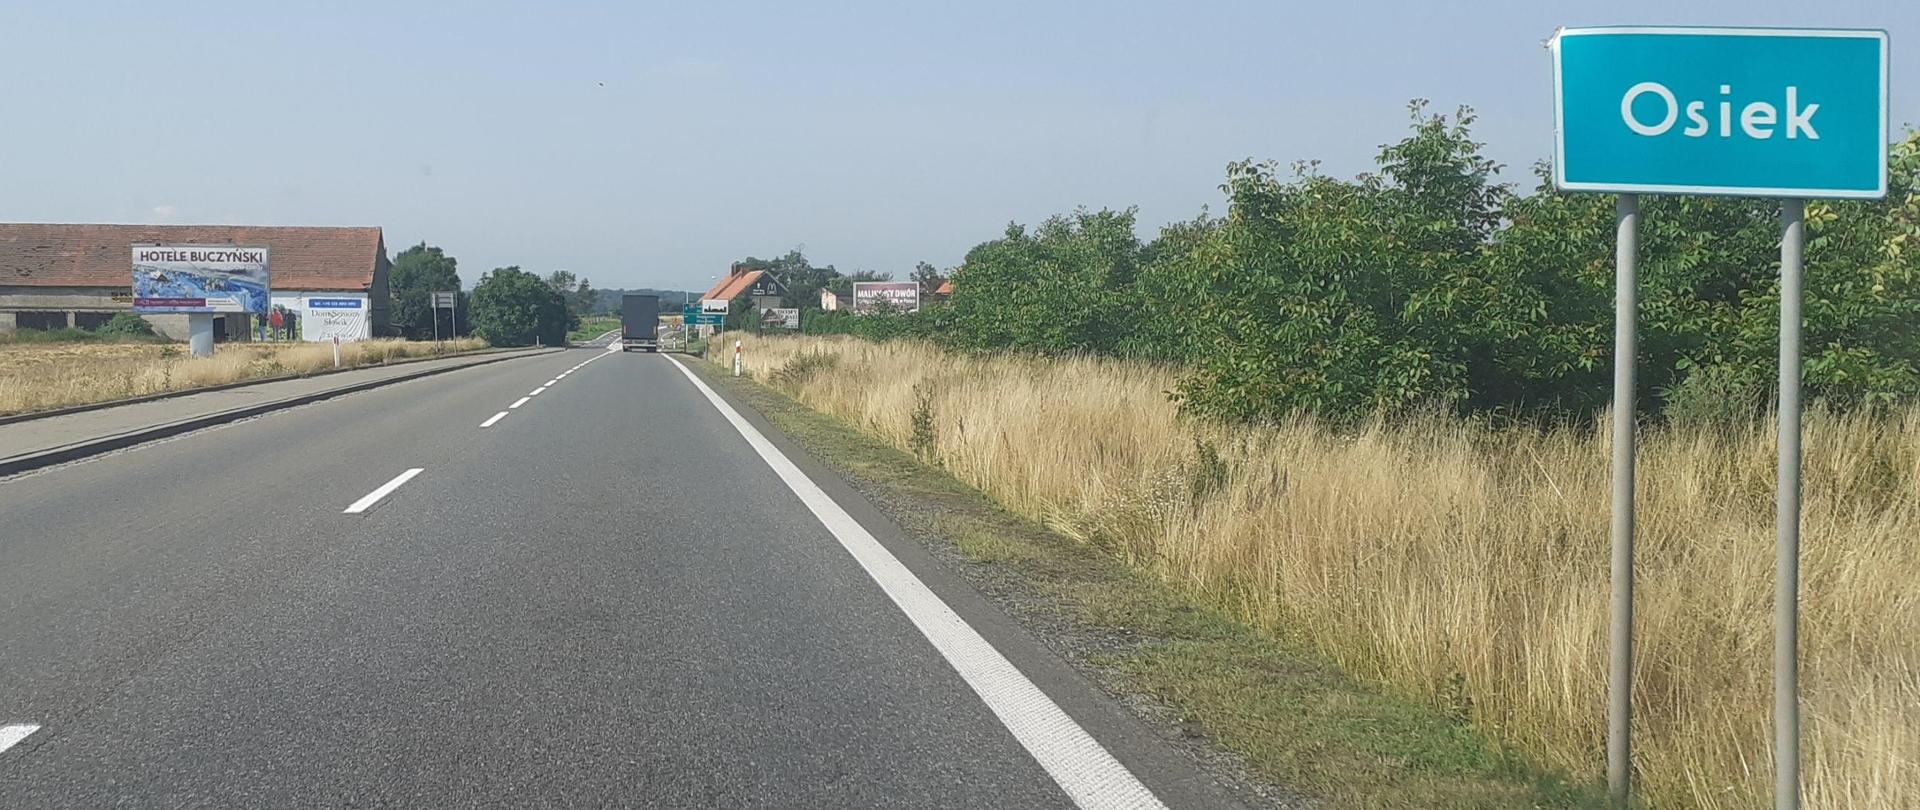 na zdjęciu widać drogę jednojezdniową oraz zieloną tablicę z nazwą miejscowości Osiek, w tle zabudowania